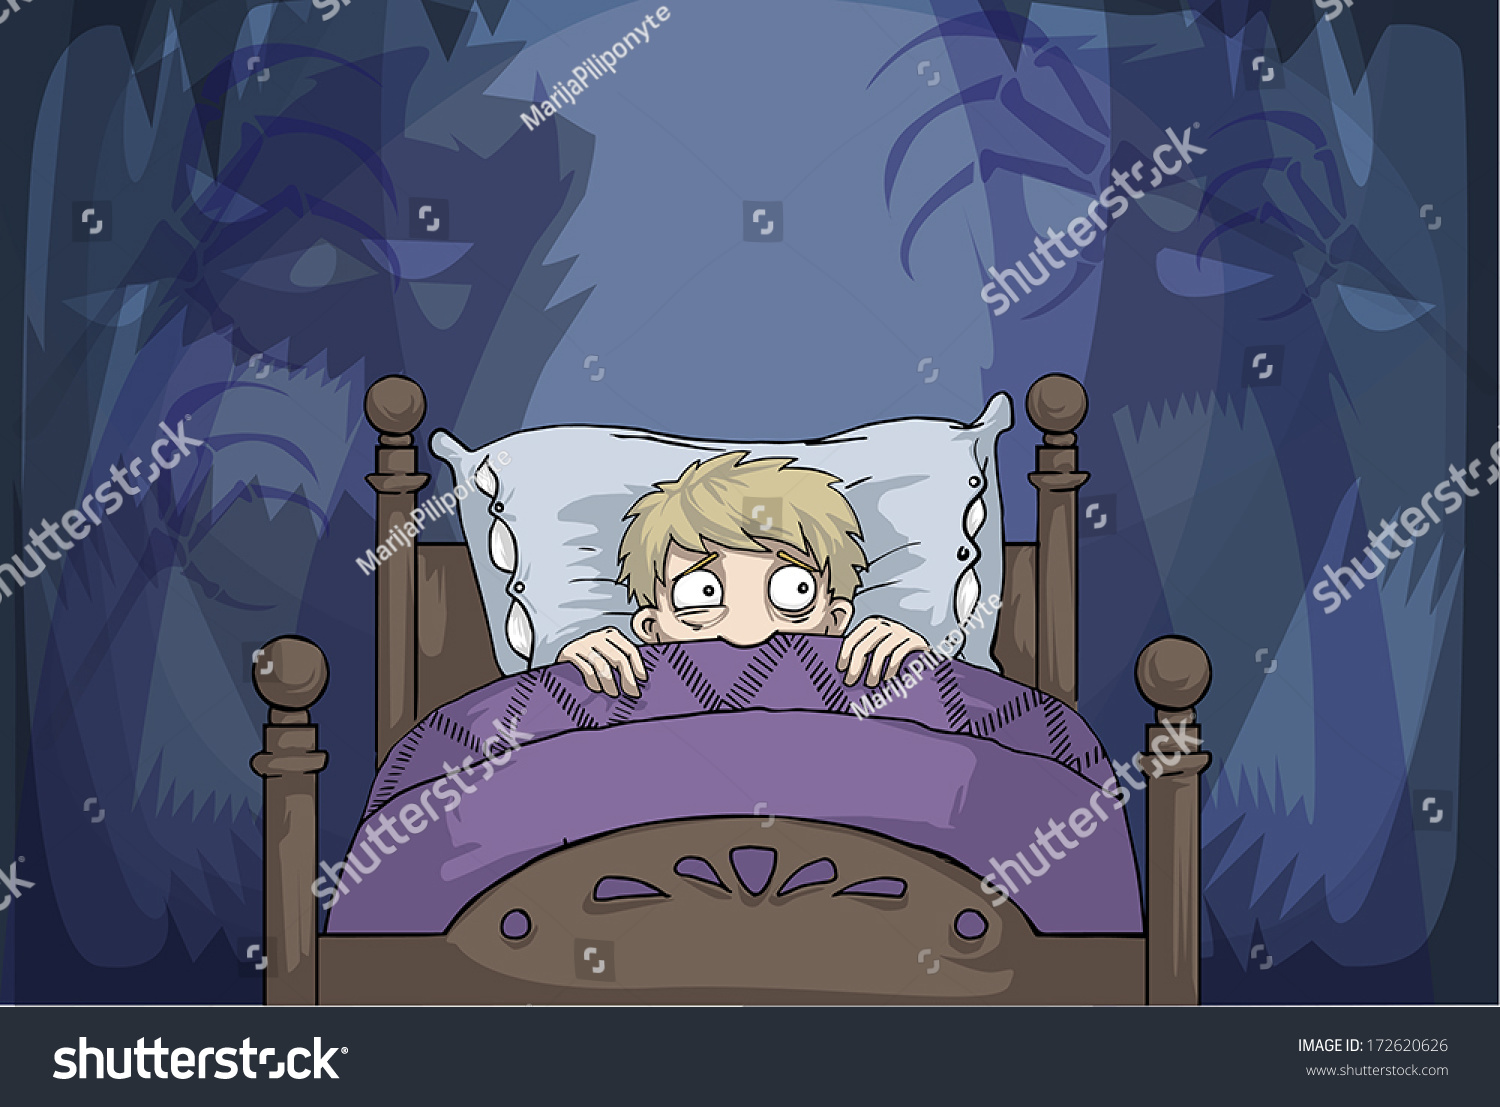 ребенок боится спать в своей кровати